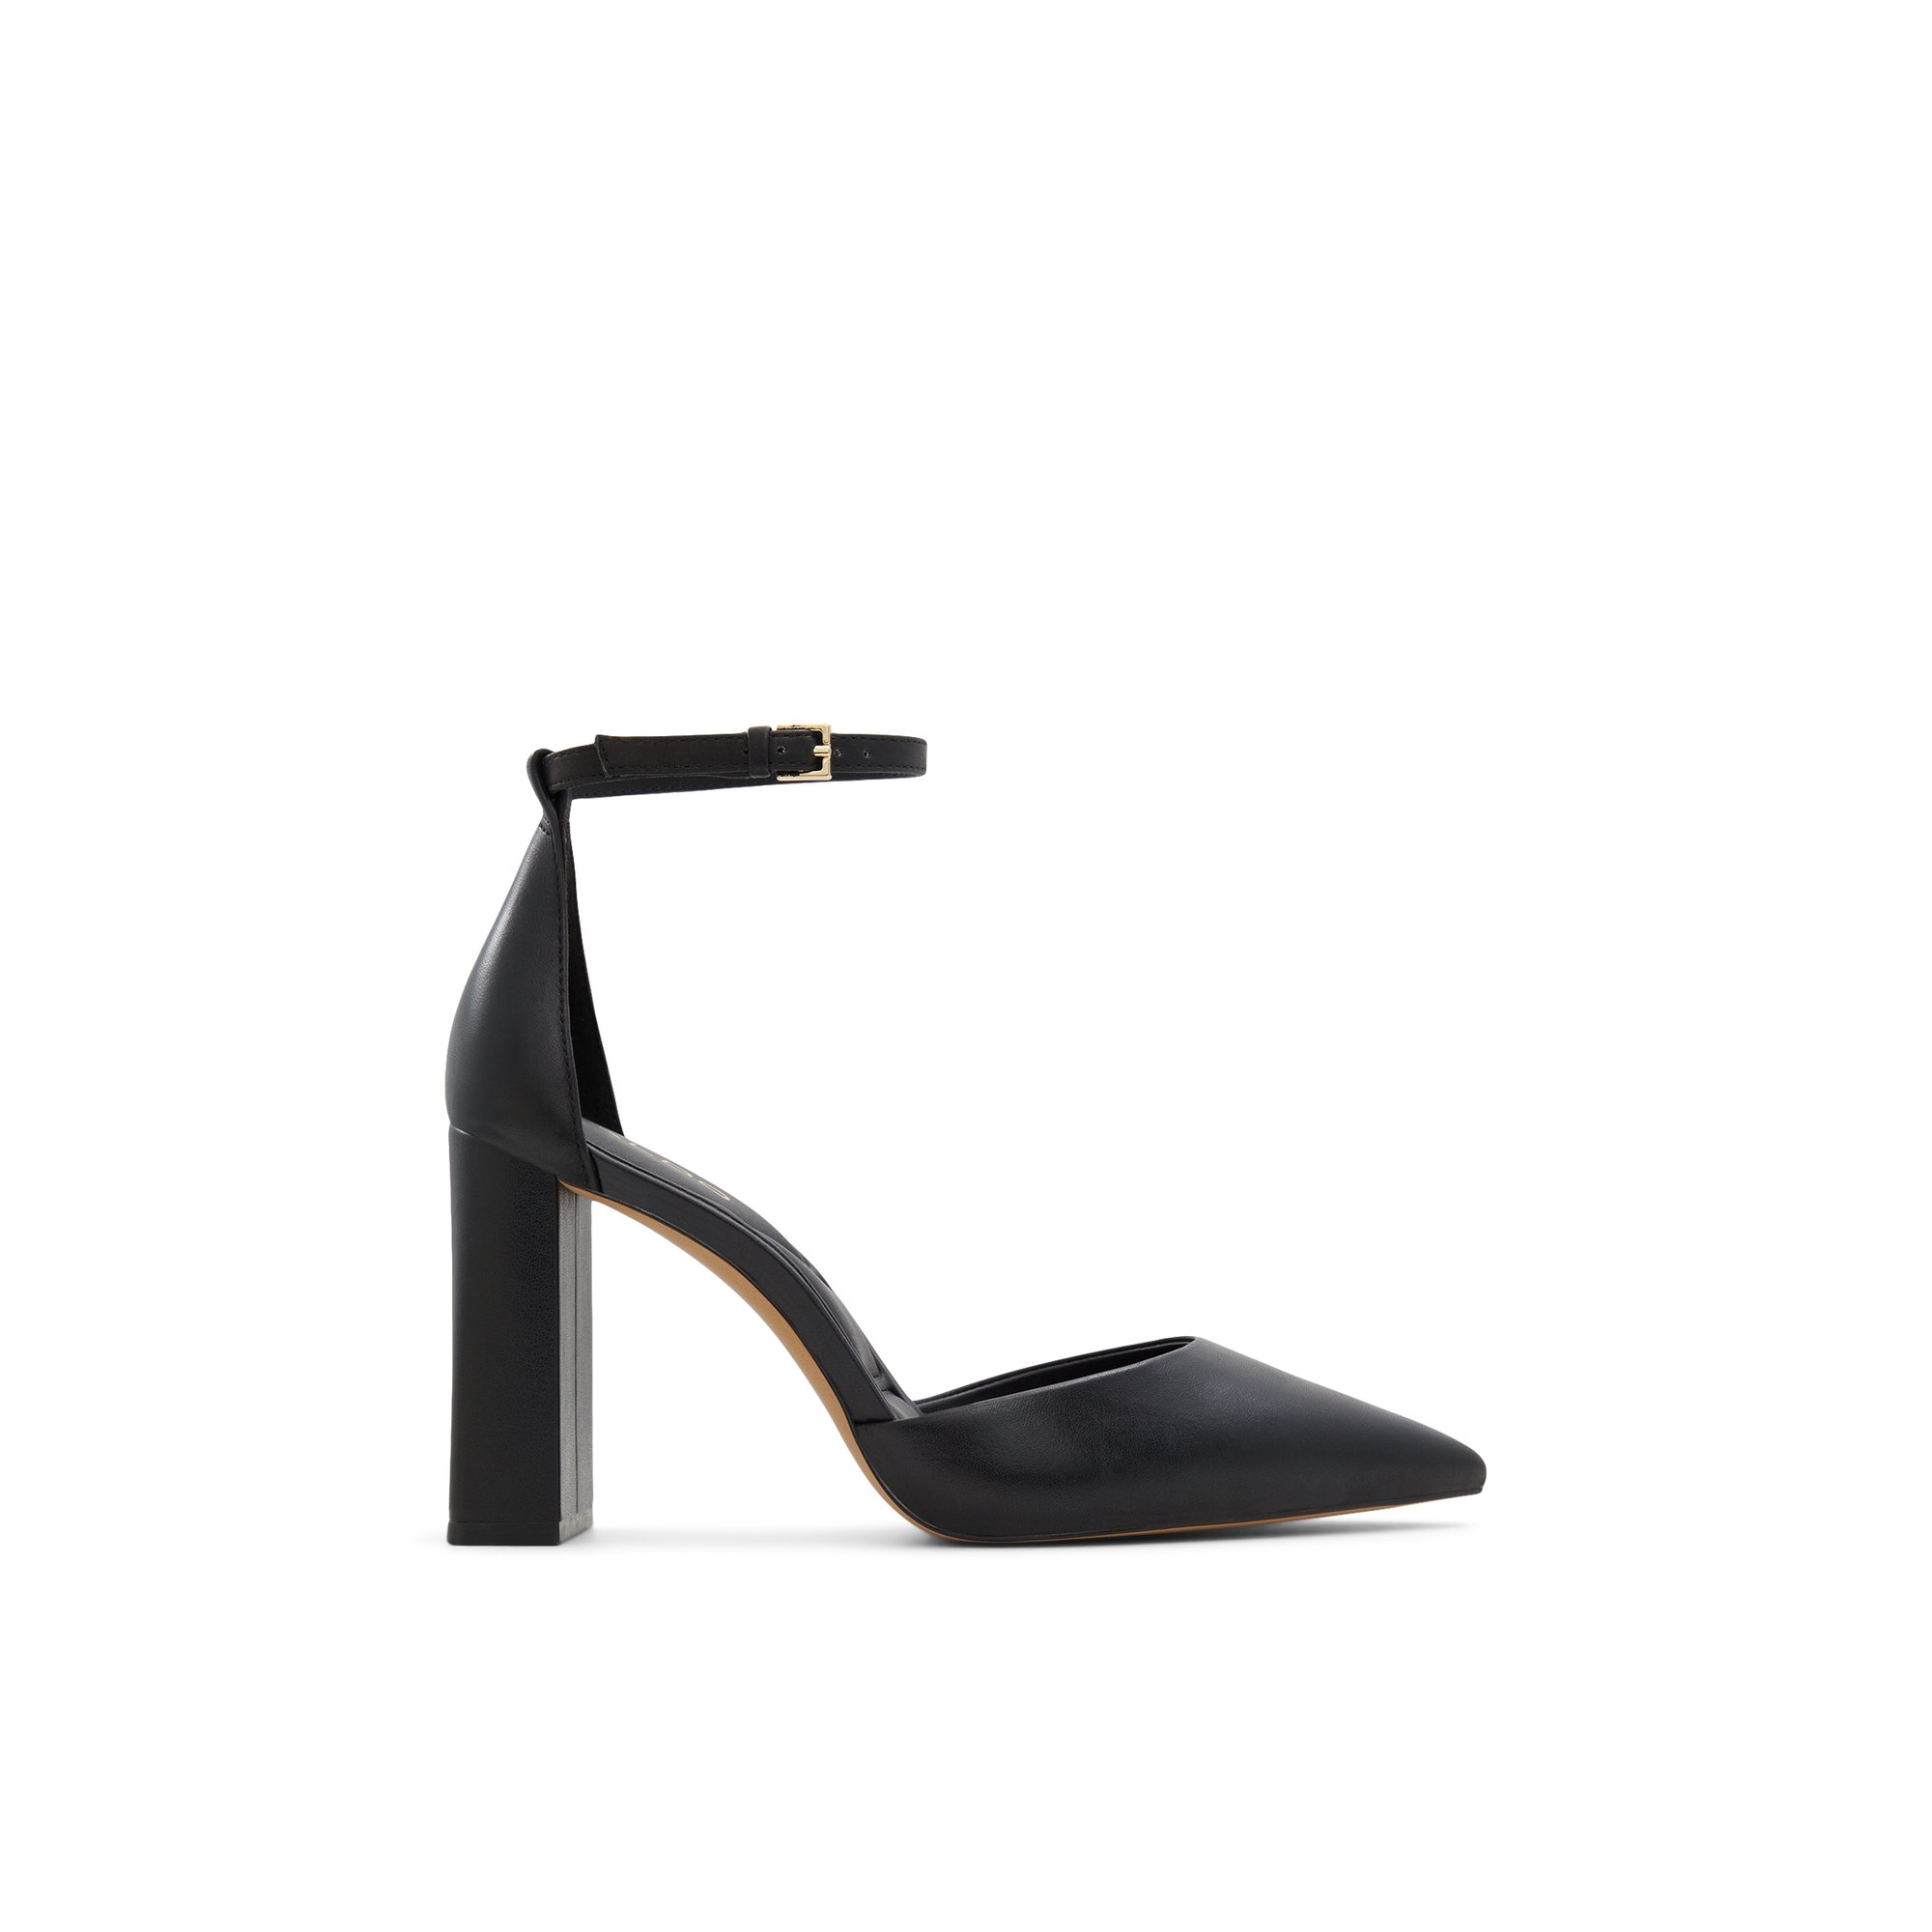 ALDO Millgate - Women's Heels Strappy - Black